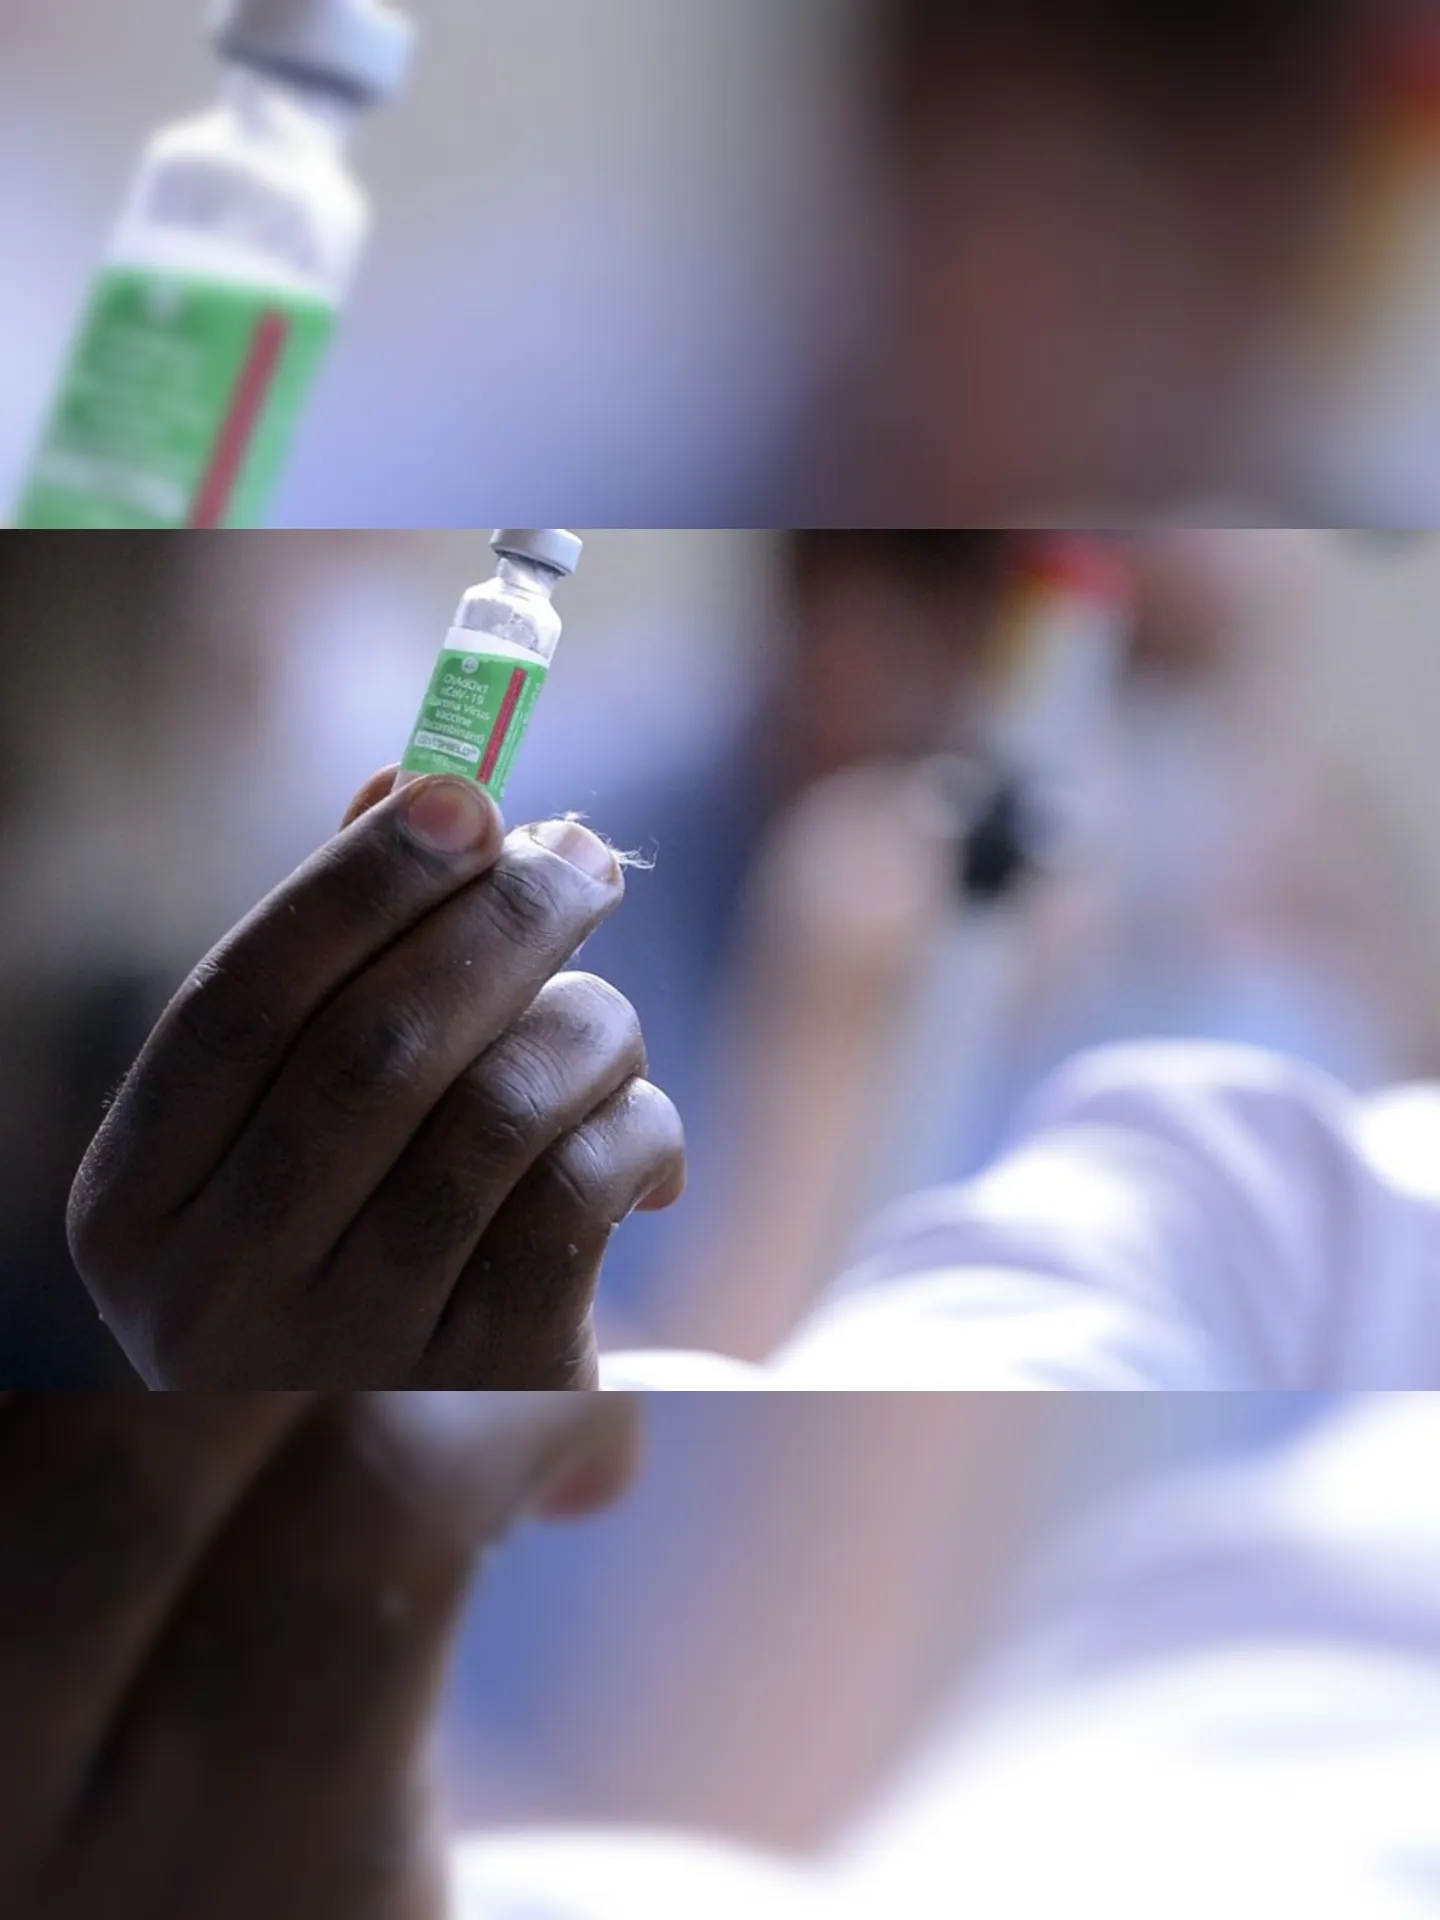 Servidor da Fiocruz prepara vacina de Oxford/AstraZeneca para a primeira aplicação no Brasil.